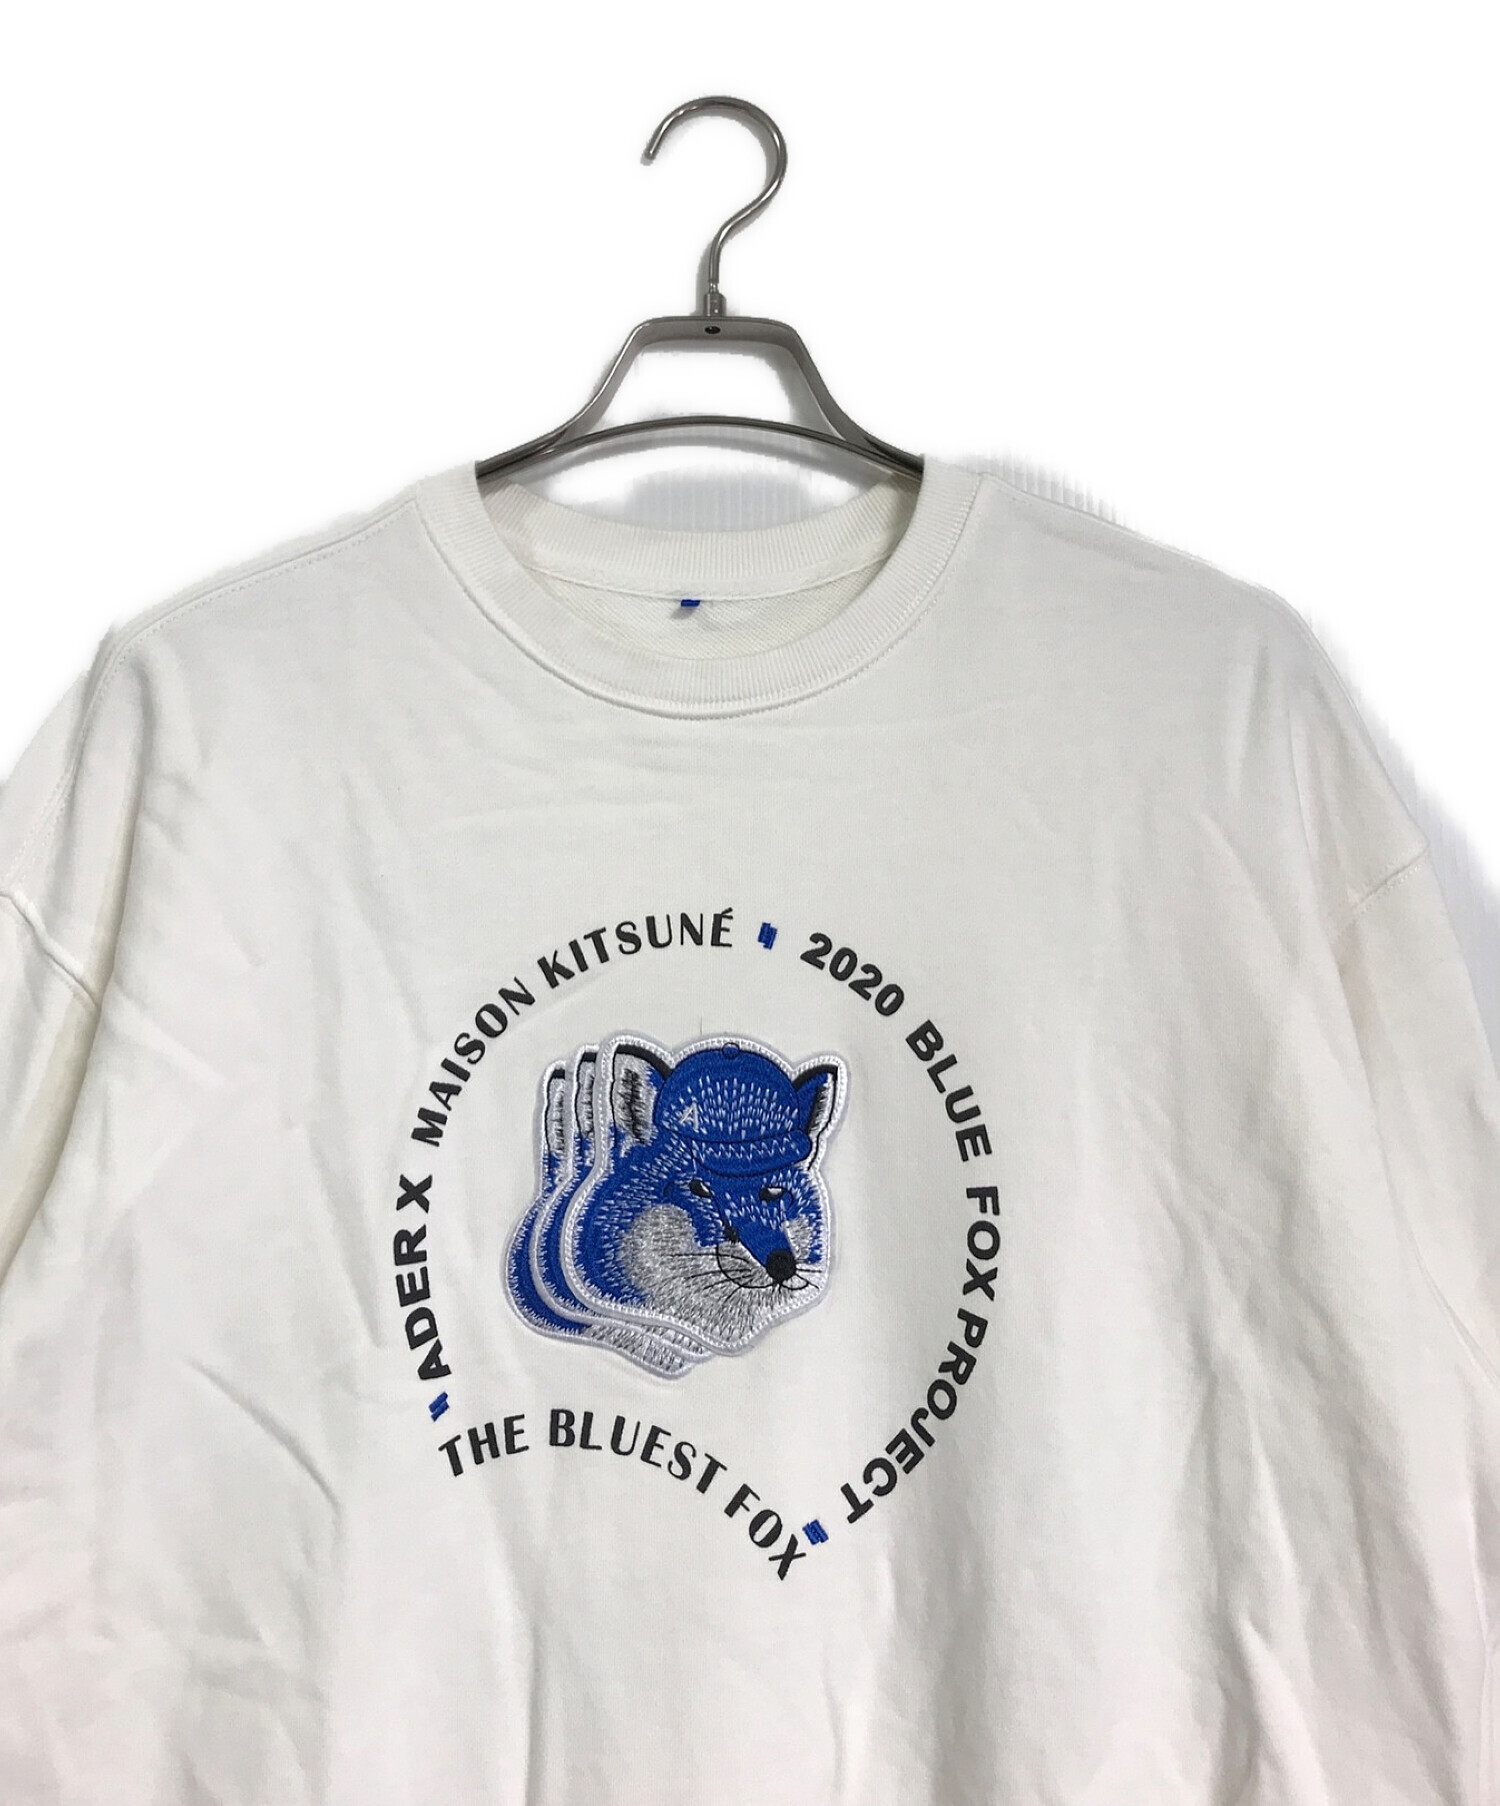 ADERERROR (アーダーエラー) maison kitsune (メゾンキツネ) Triple fox head sweatshirt /  トリプルフォックスヘッドスウェットシャツ ホワイト サイズ:A